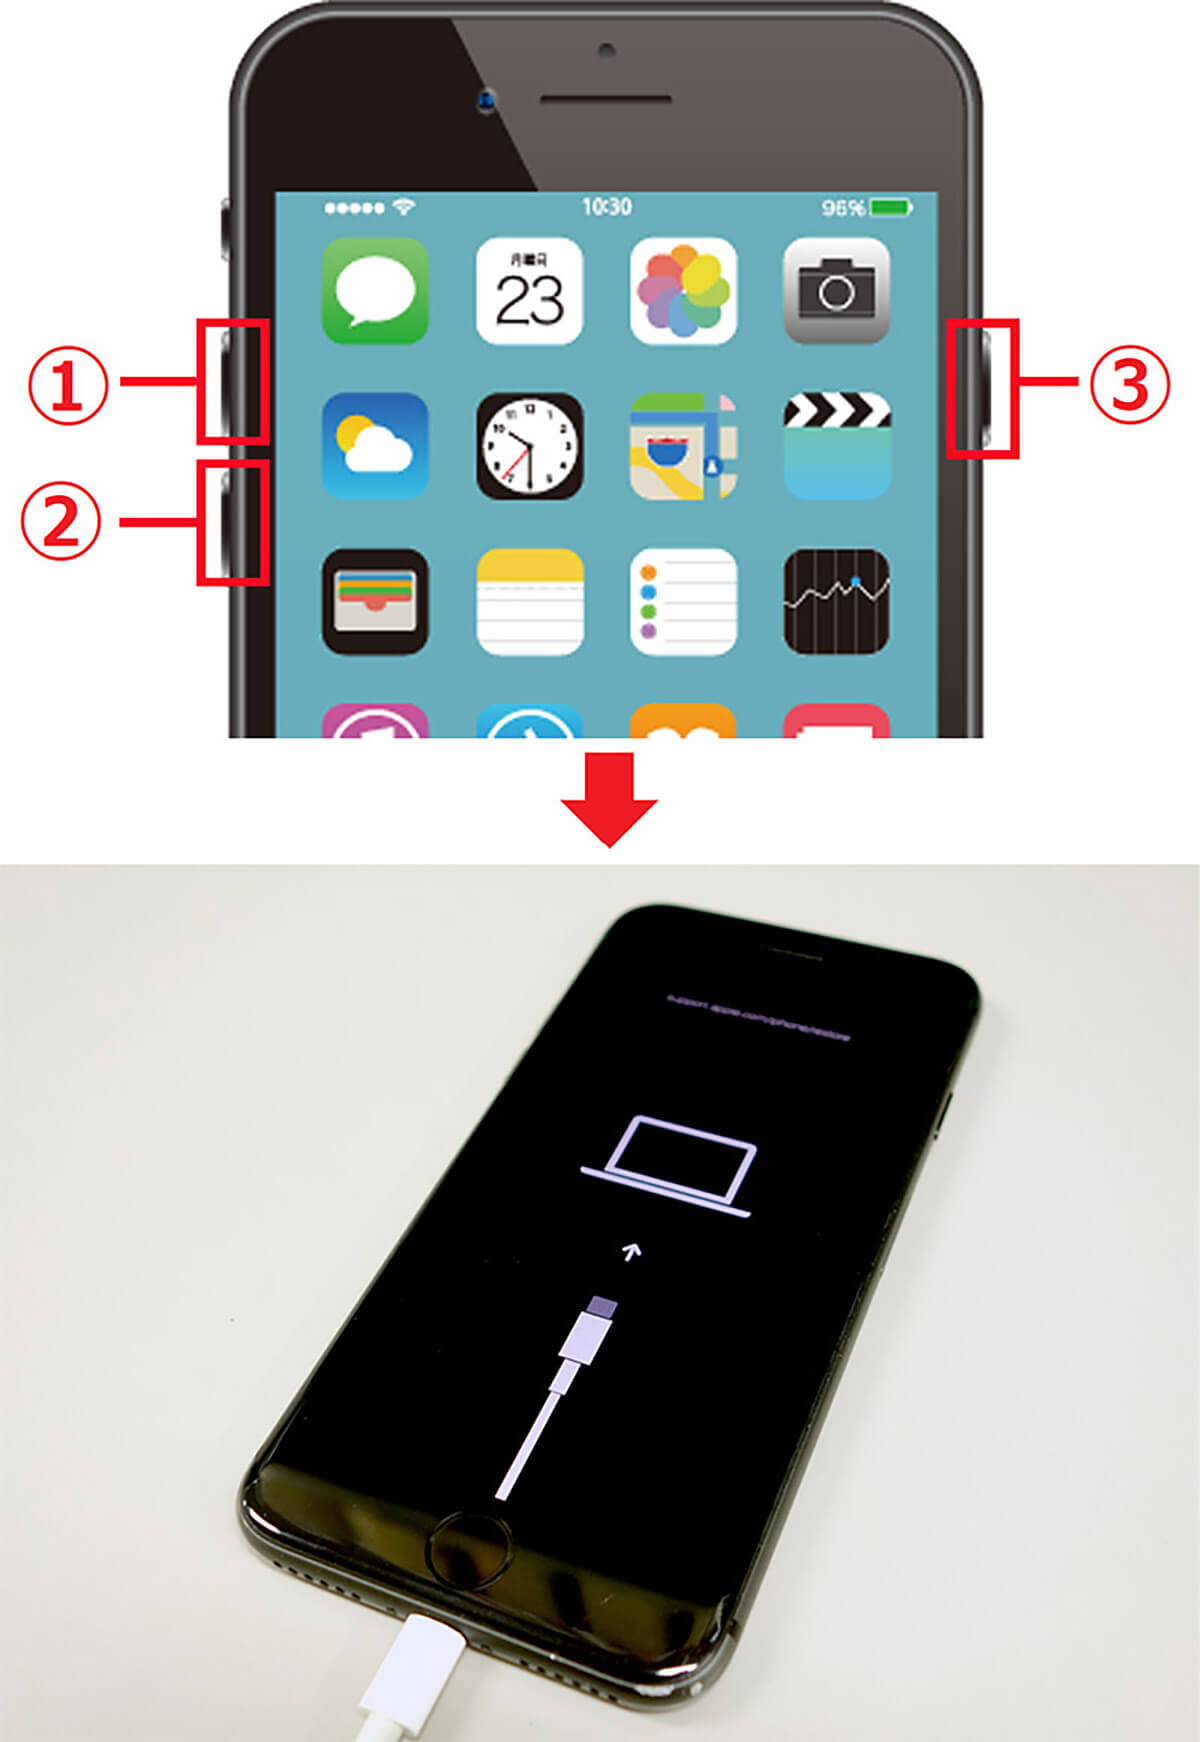 「iPhoneは使用できません」と画面に表示された際の対処法 | リカバリーモードで初期化、復元1